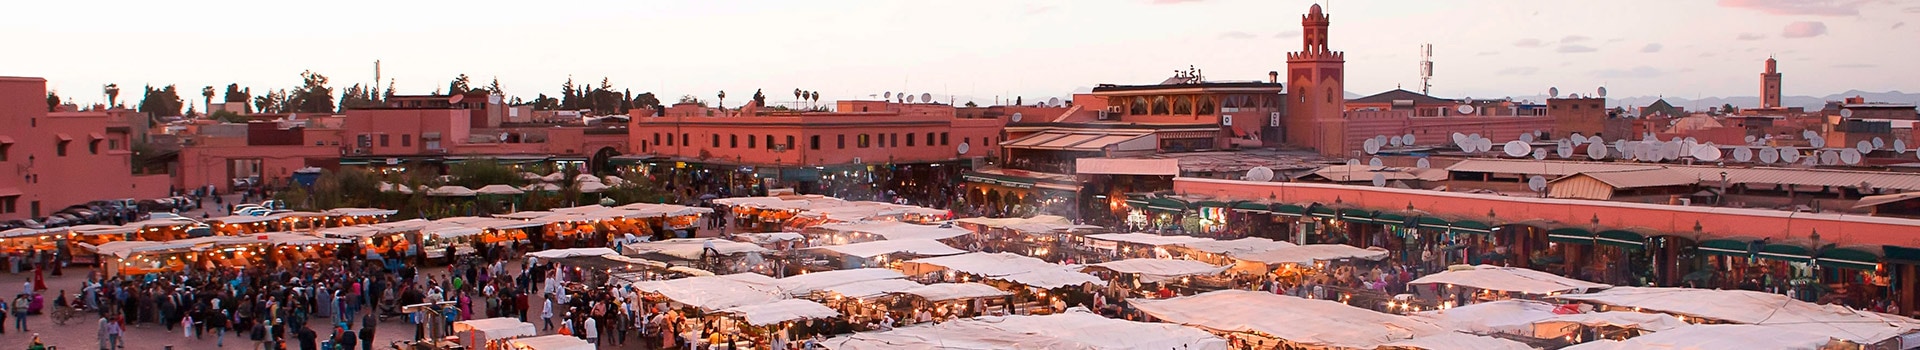 Bordeaux - Marrakech